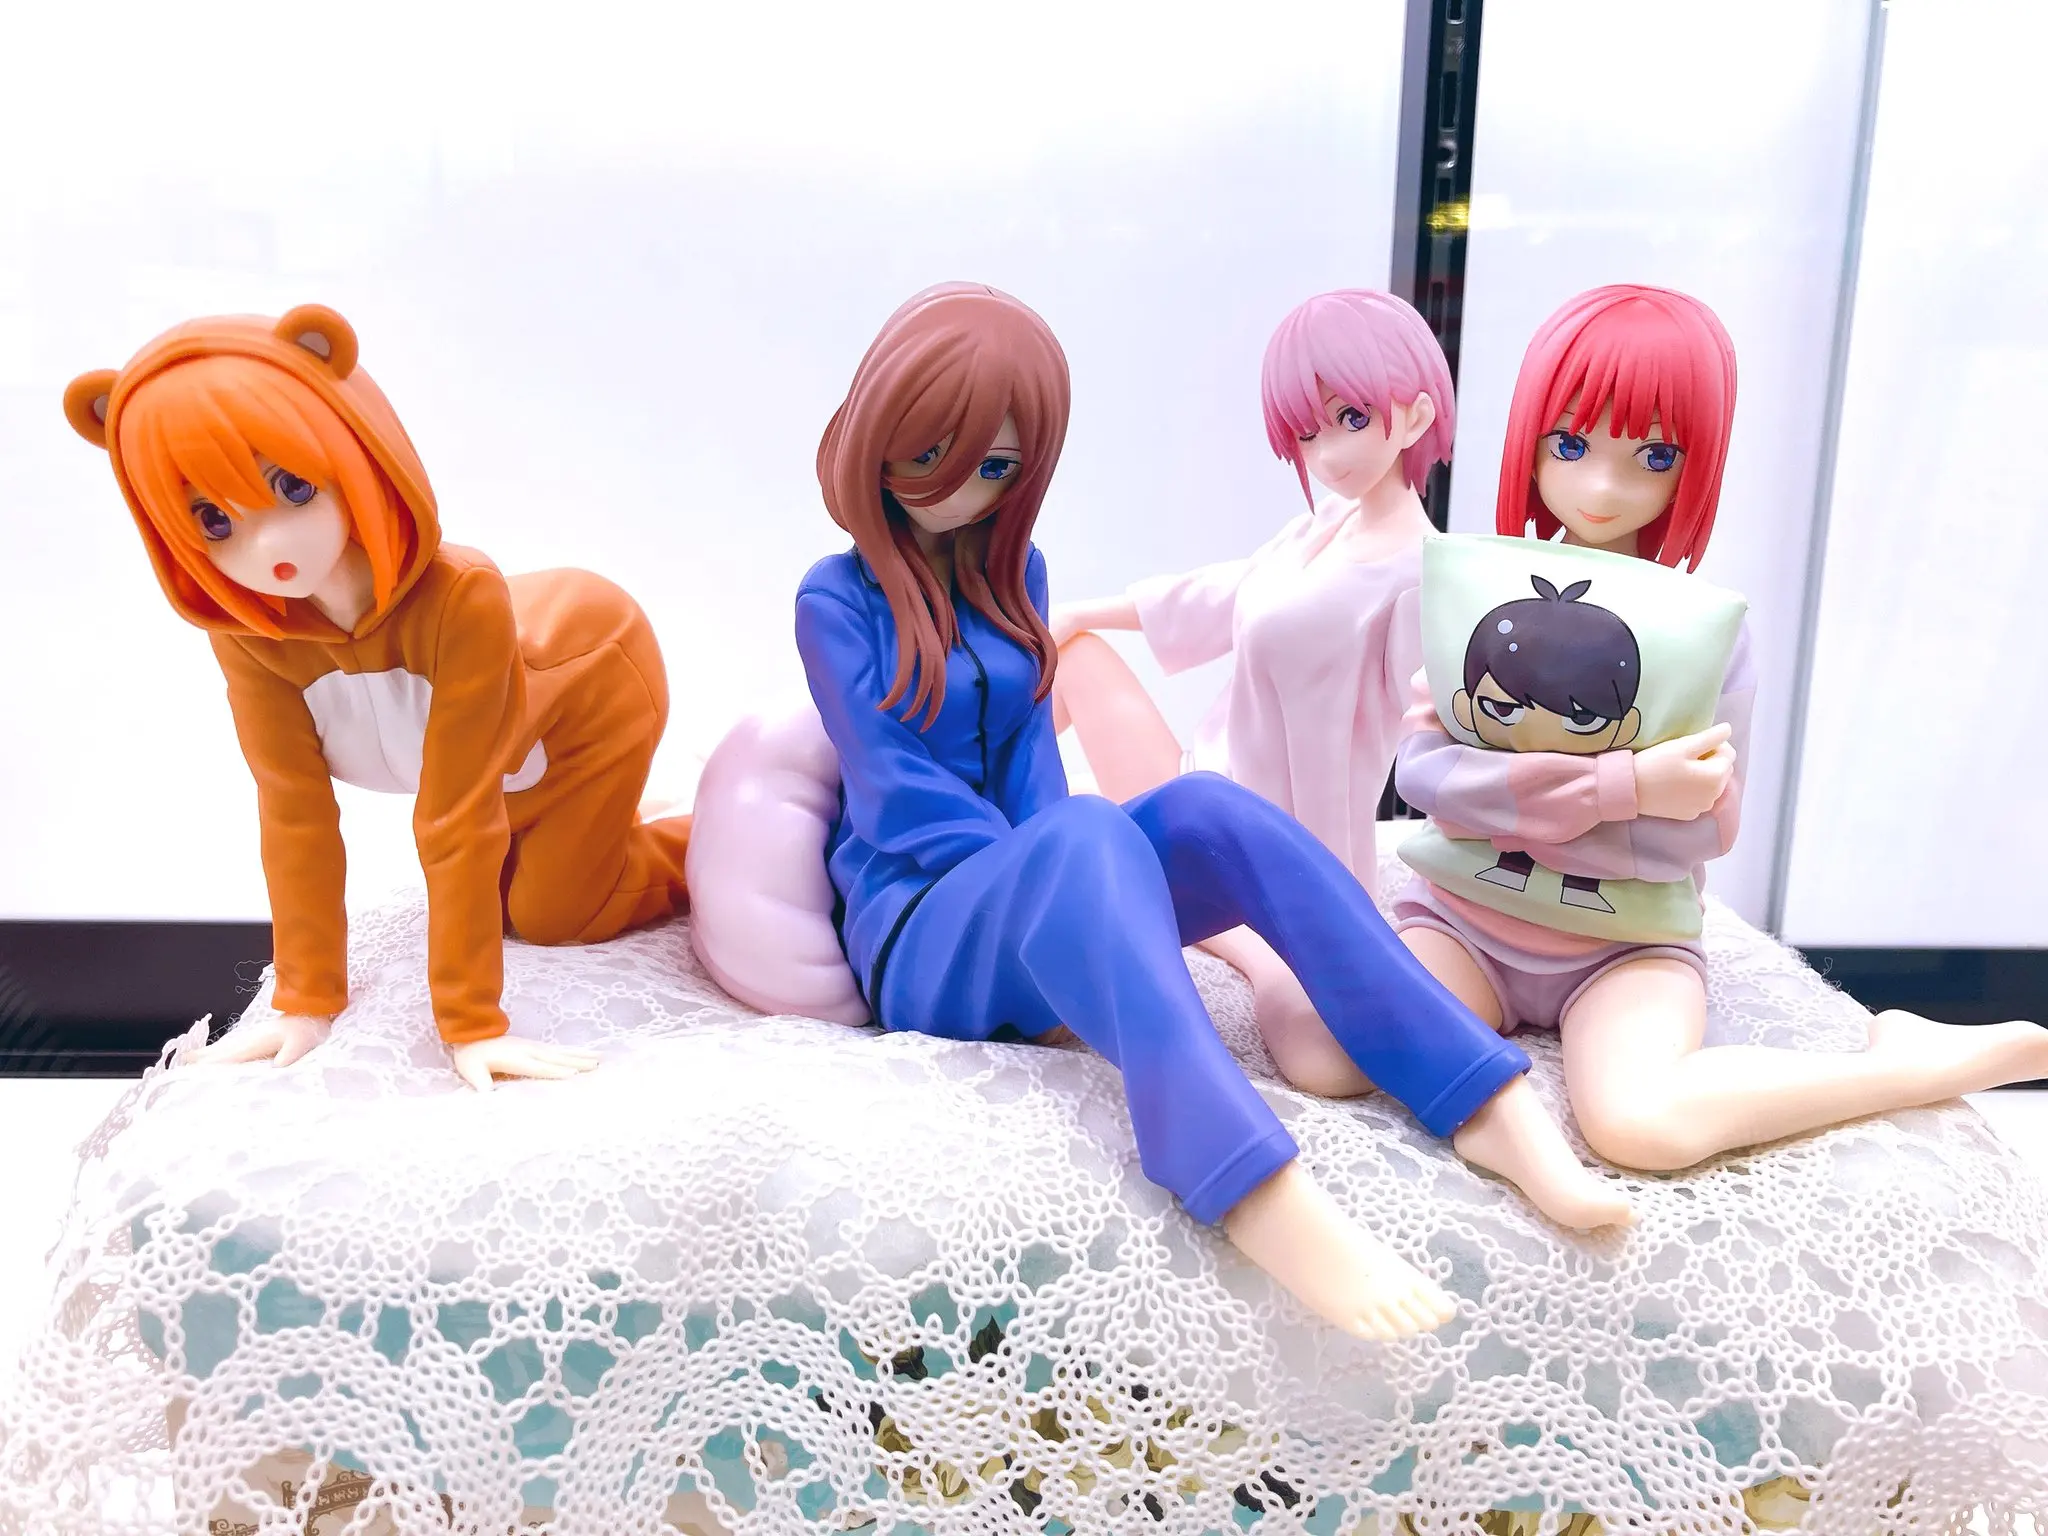 

2021 японская оригинальная аниме-фигурка Накано Мику, пижама, экшн-фигурка ver, Коллекционная модель, игрушки для мальчиков